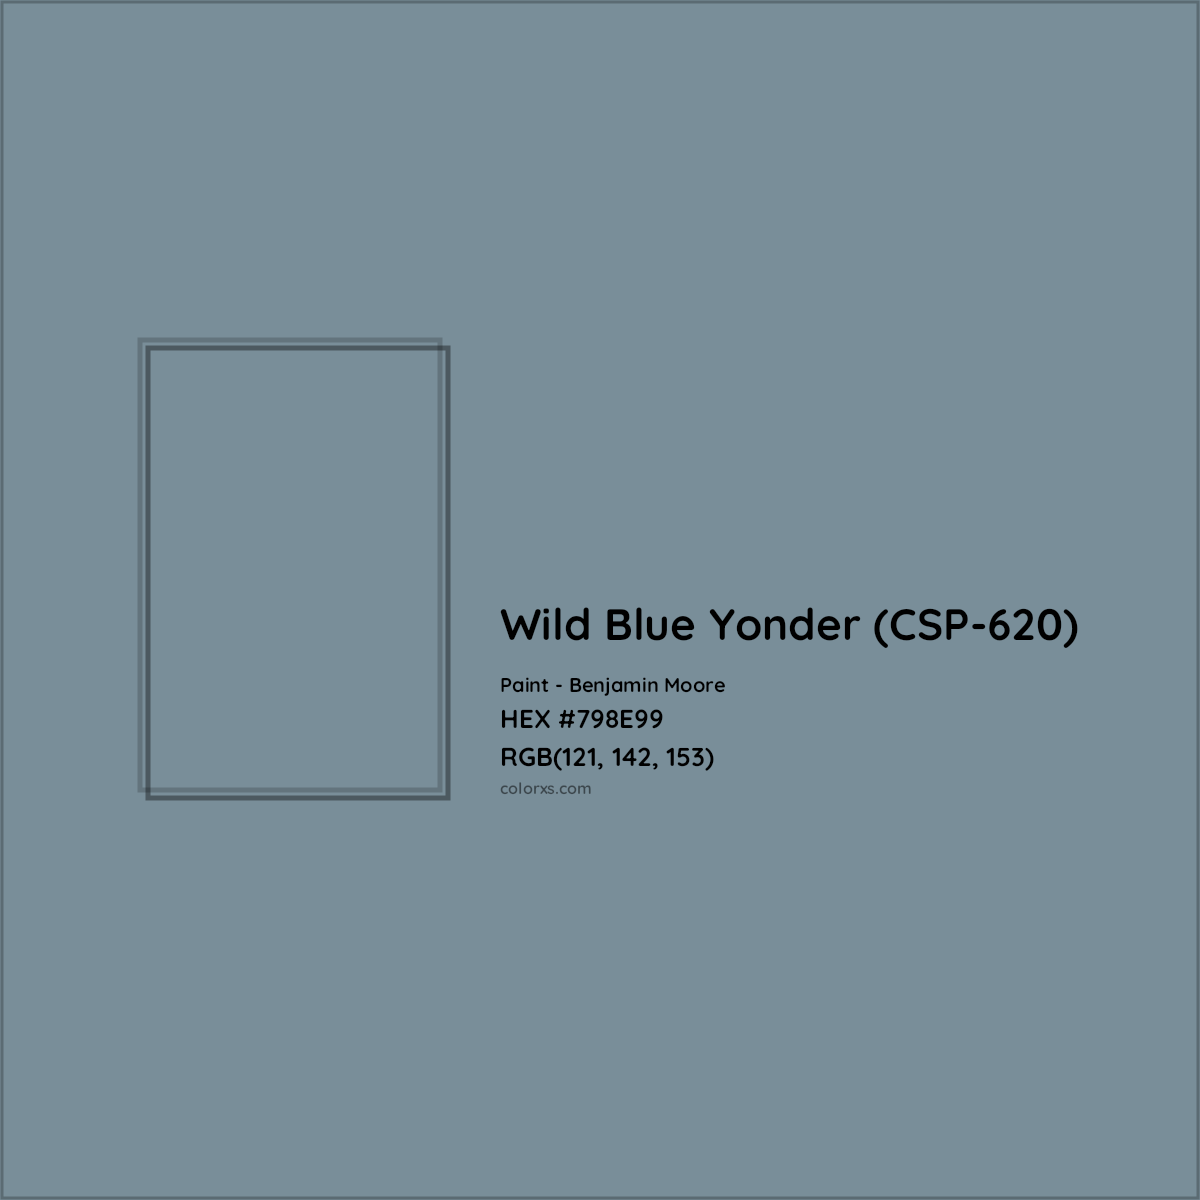 HEX #798E99 Wild Blue Yonder (CSP-620) Paint Benjamin Moore - Color Code